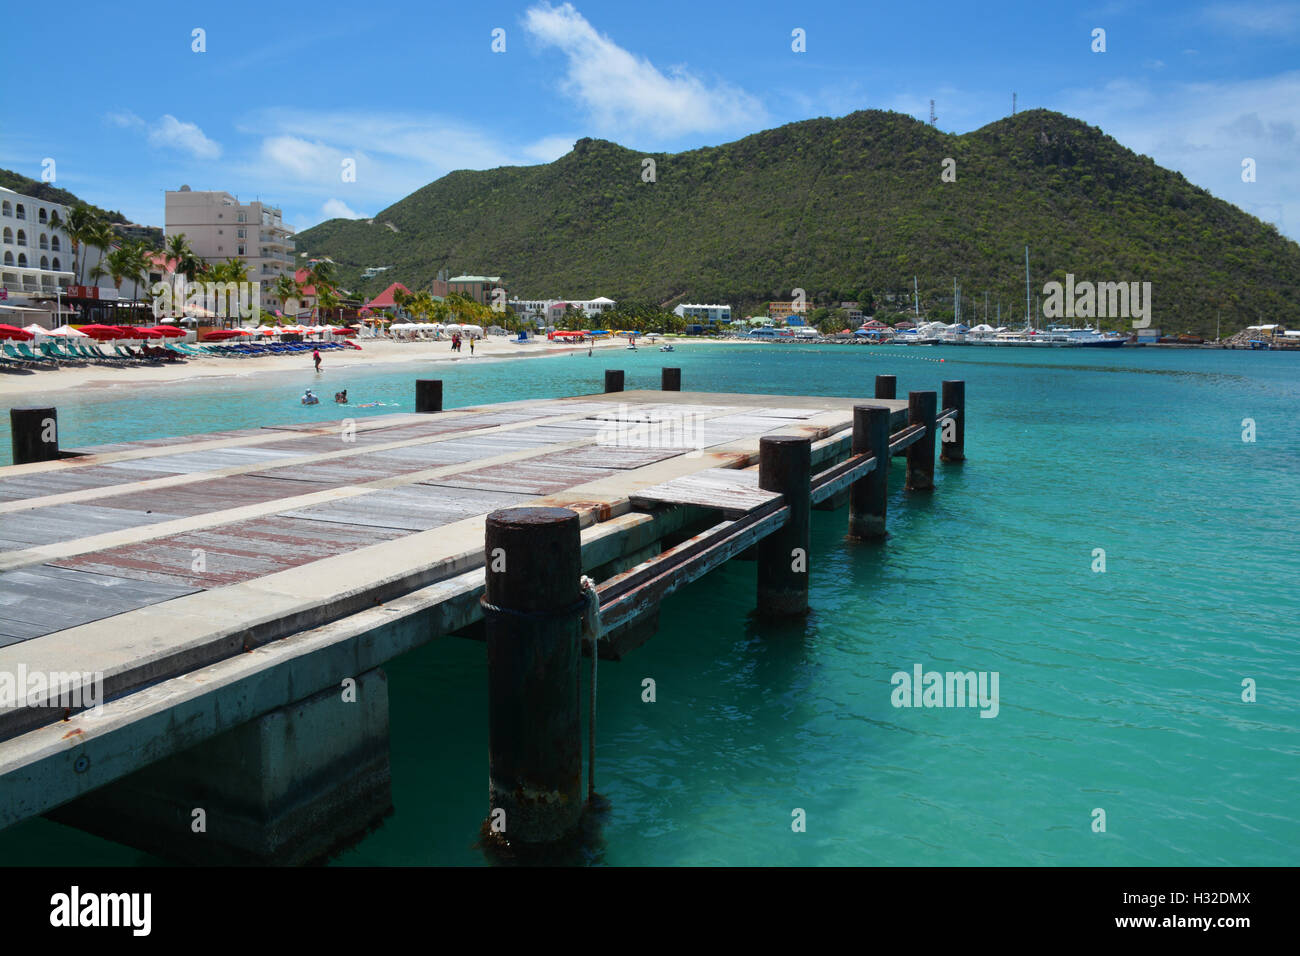 Great Bay - Philipsburg - St. Maarten Stock Photo